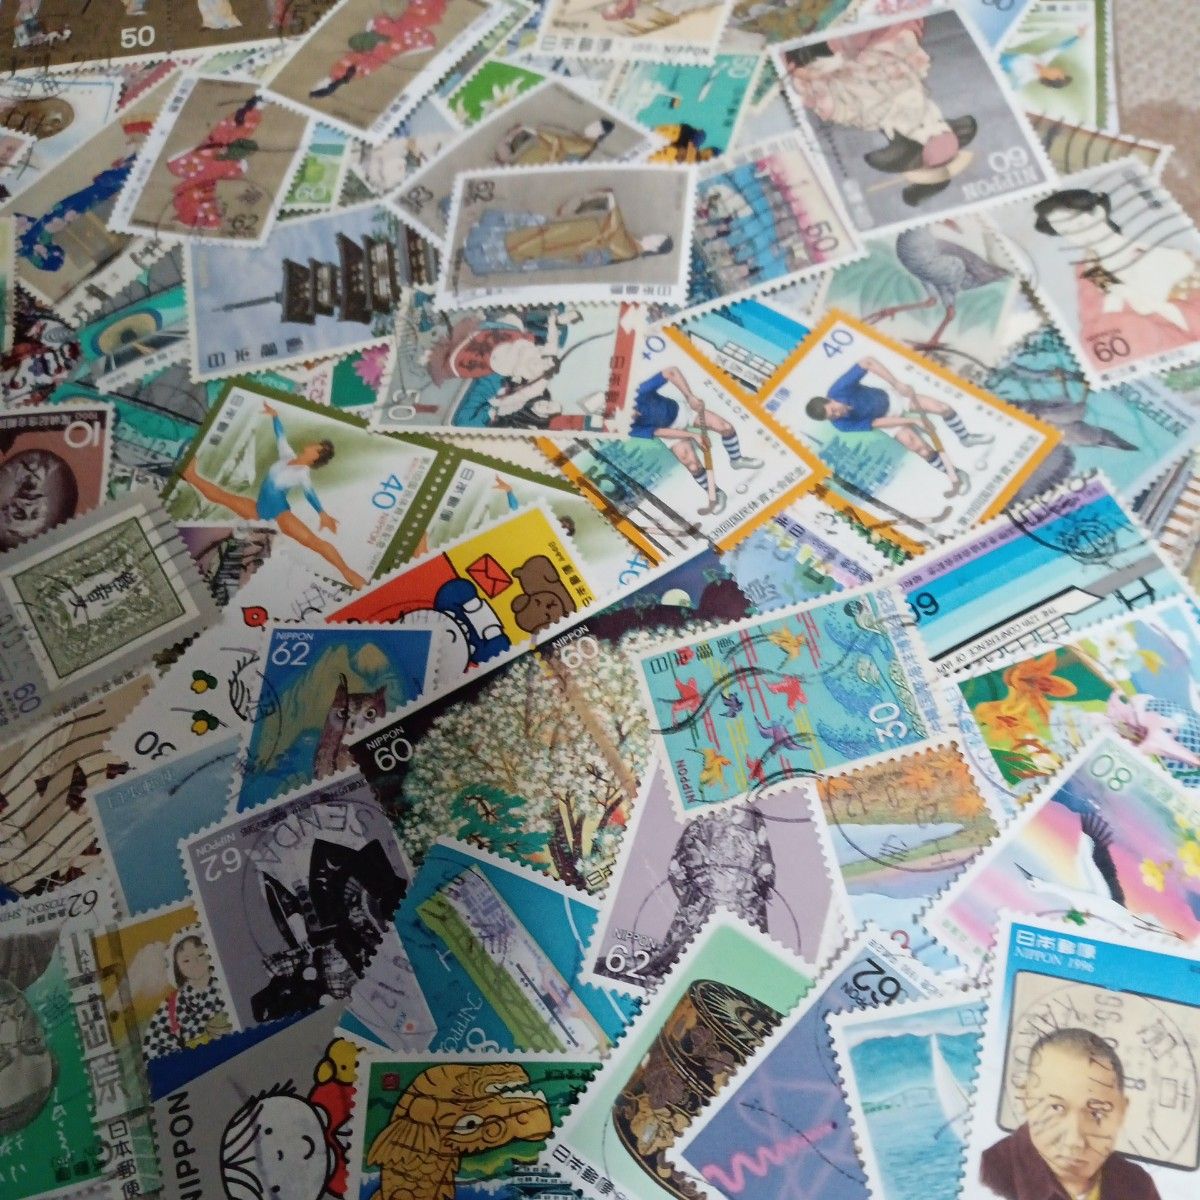 使用済み日本切手各種1000枚+100枚以上オフペーパー・普通、小型切手無し、重複あり